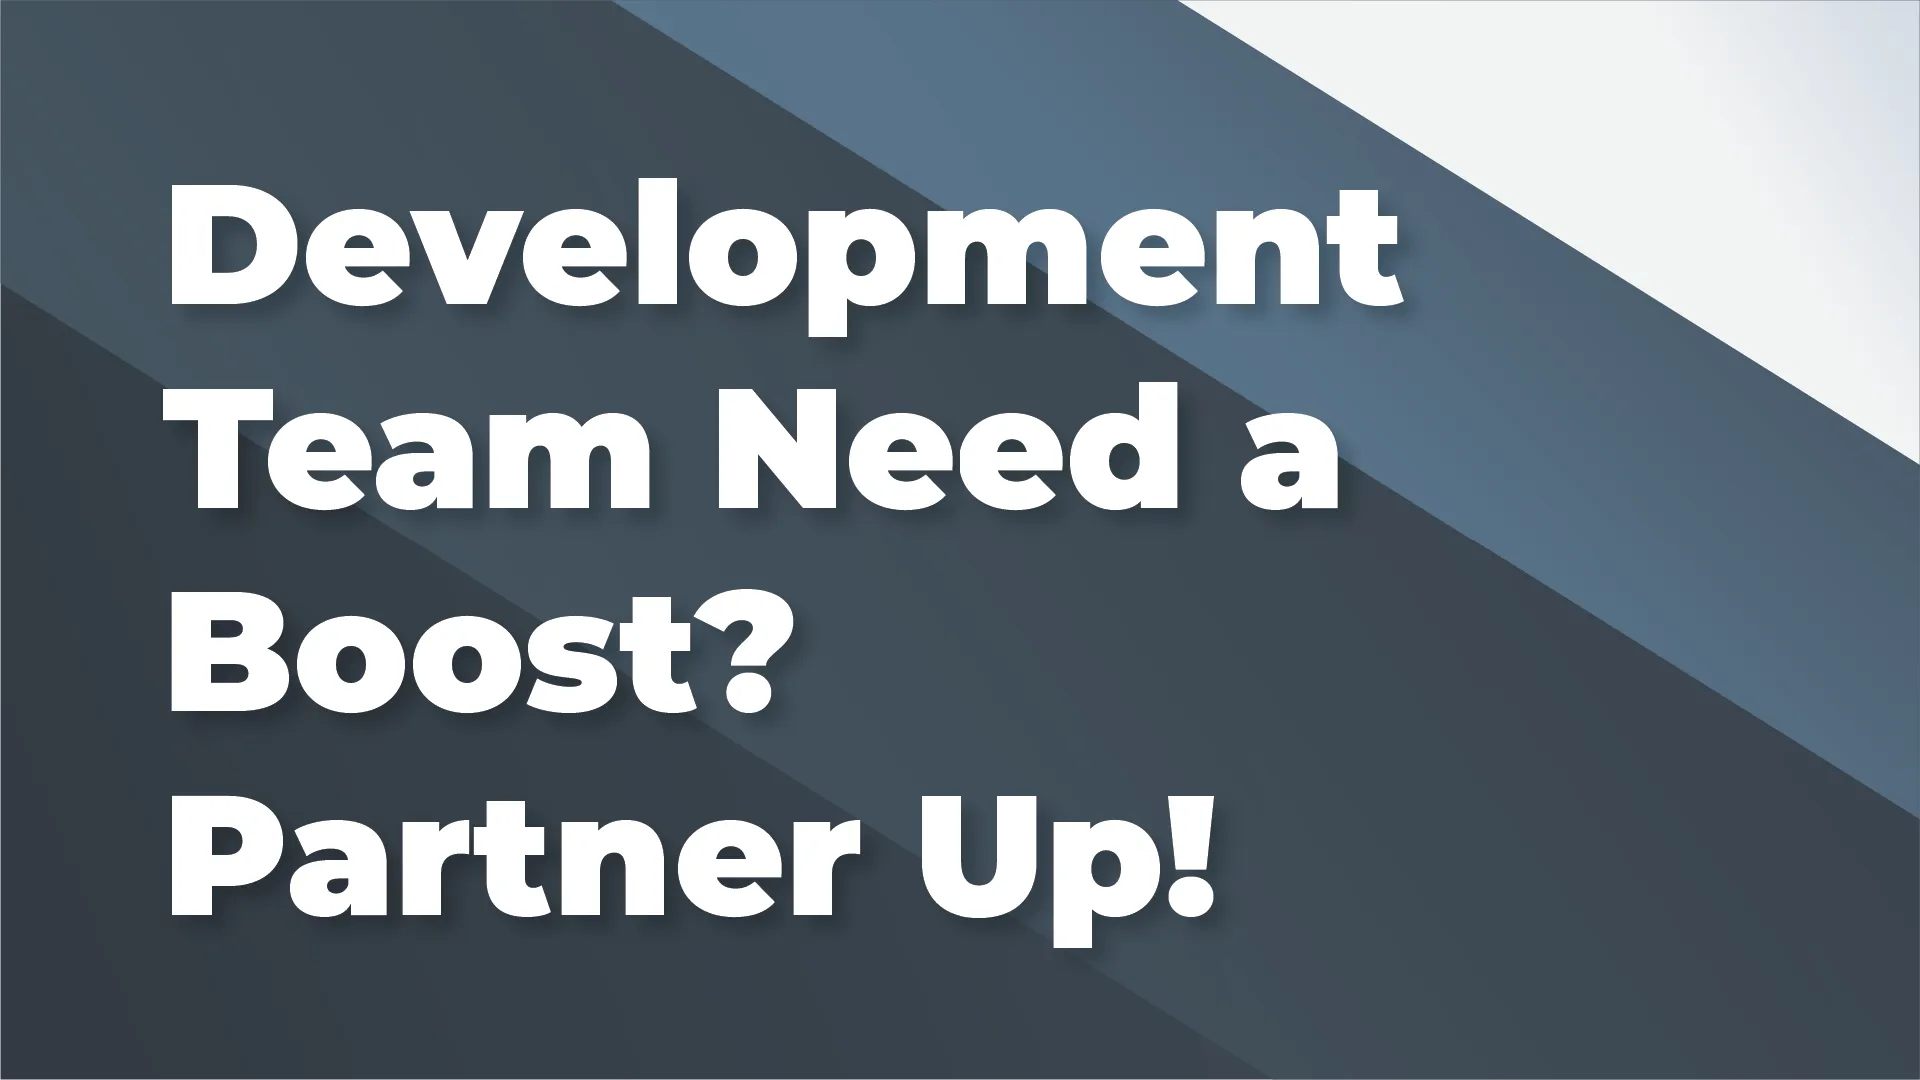 Development Team Need a Boost? Partner Up!